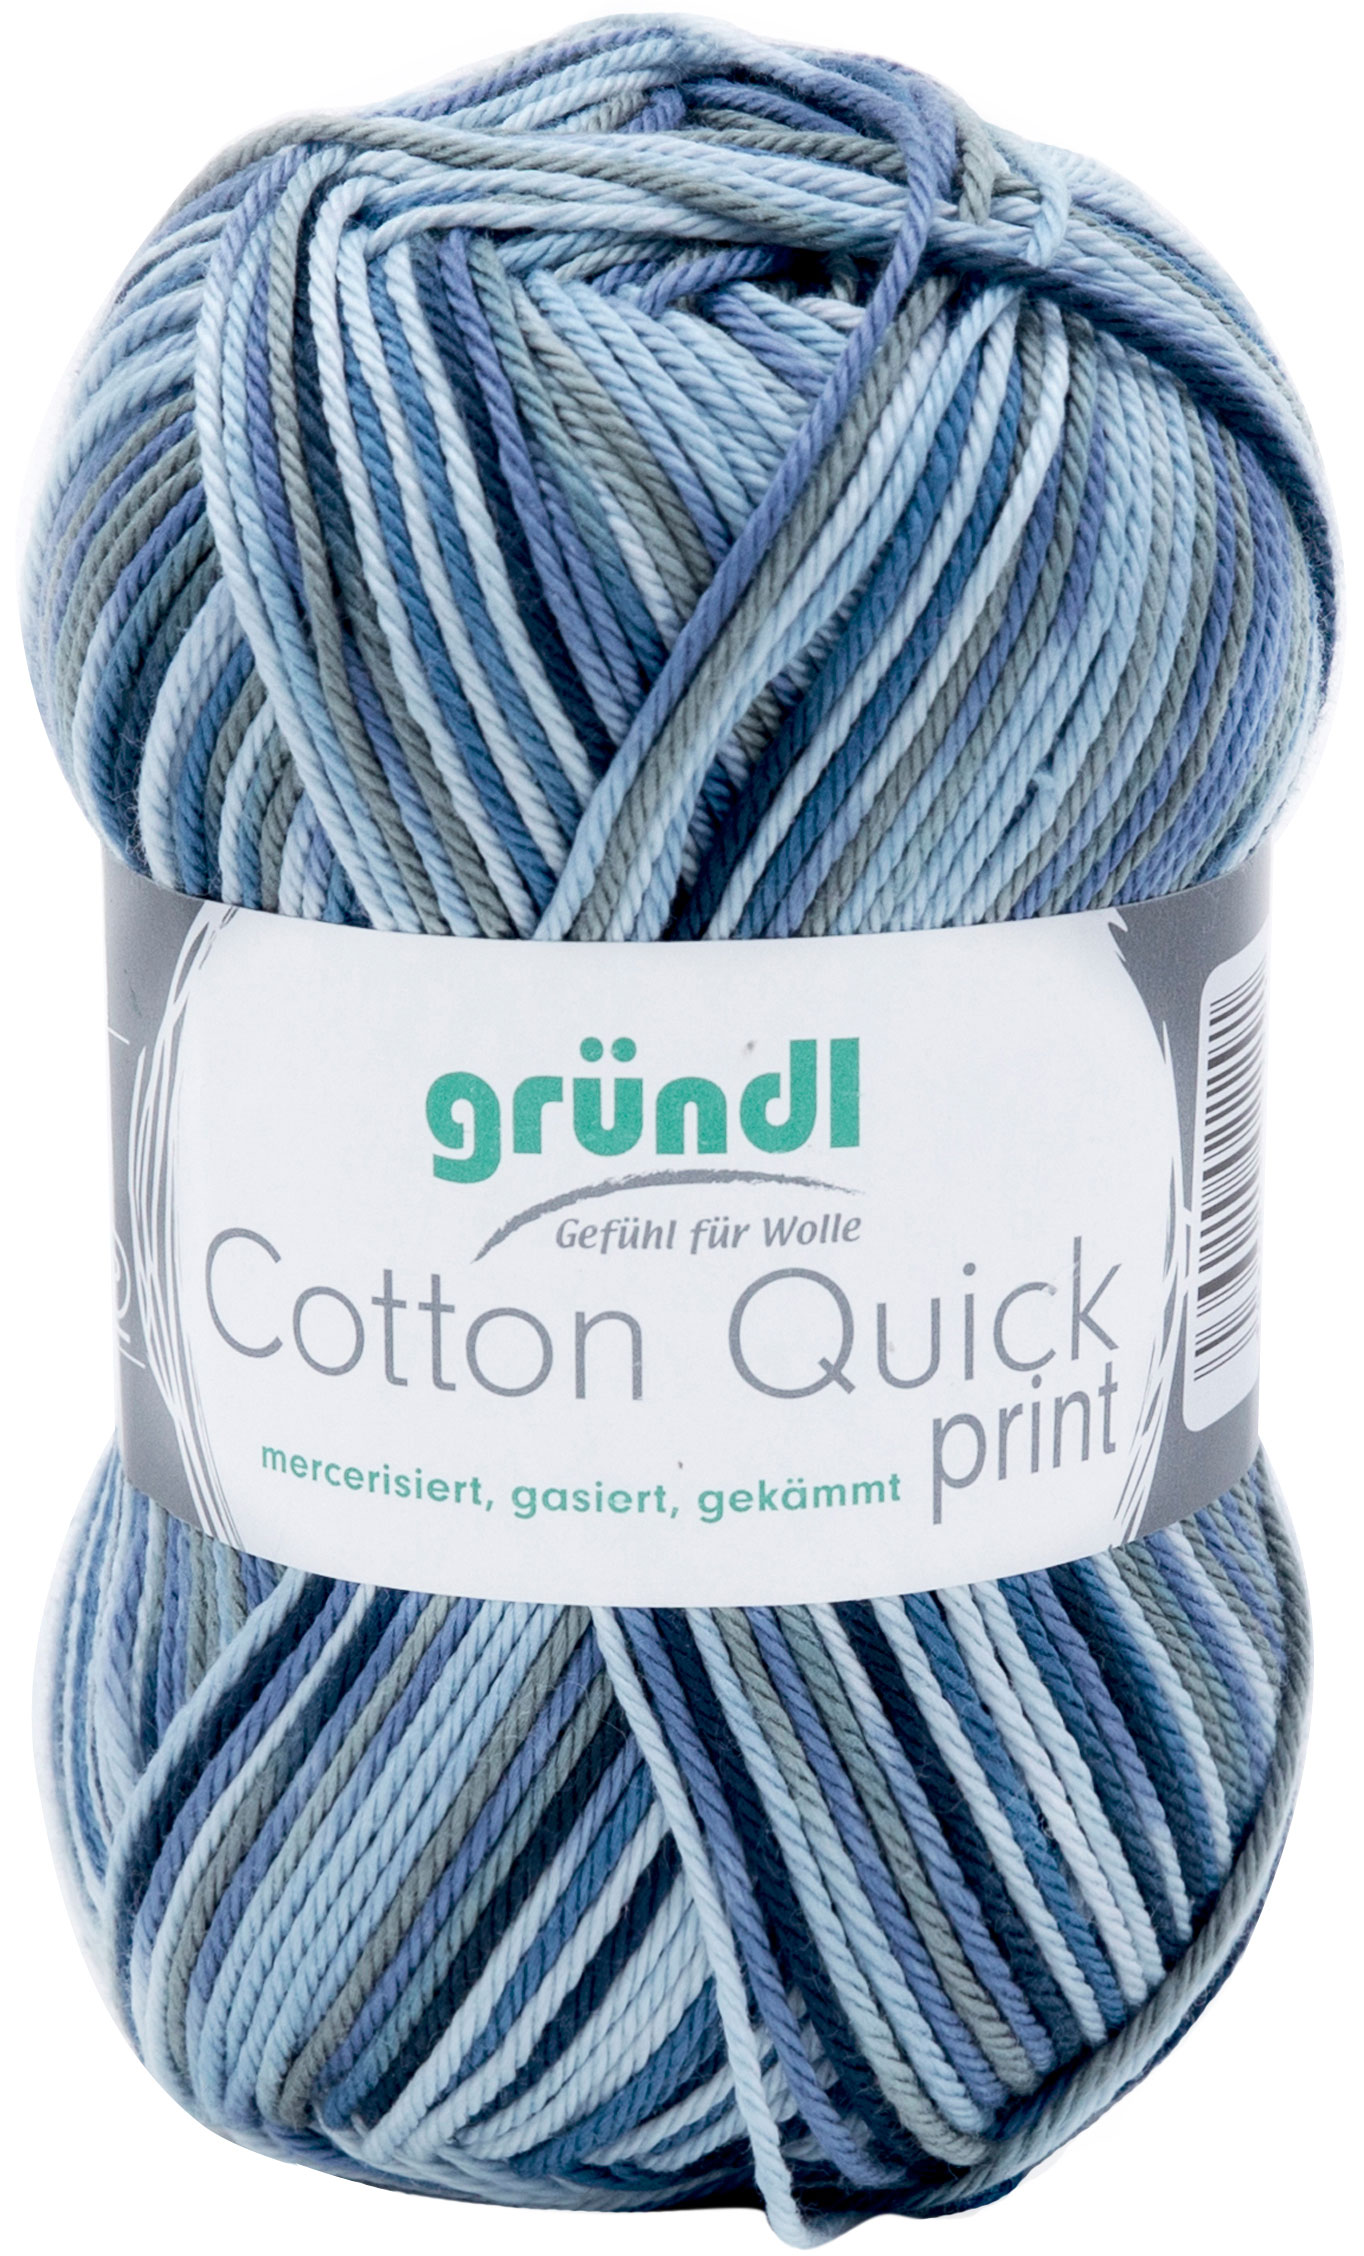 GRÜNDL Strickgarn Cotton Quick print blau